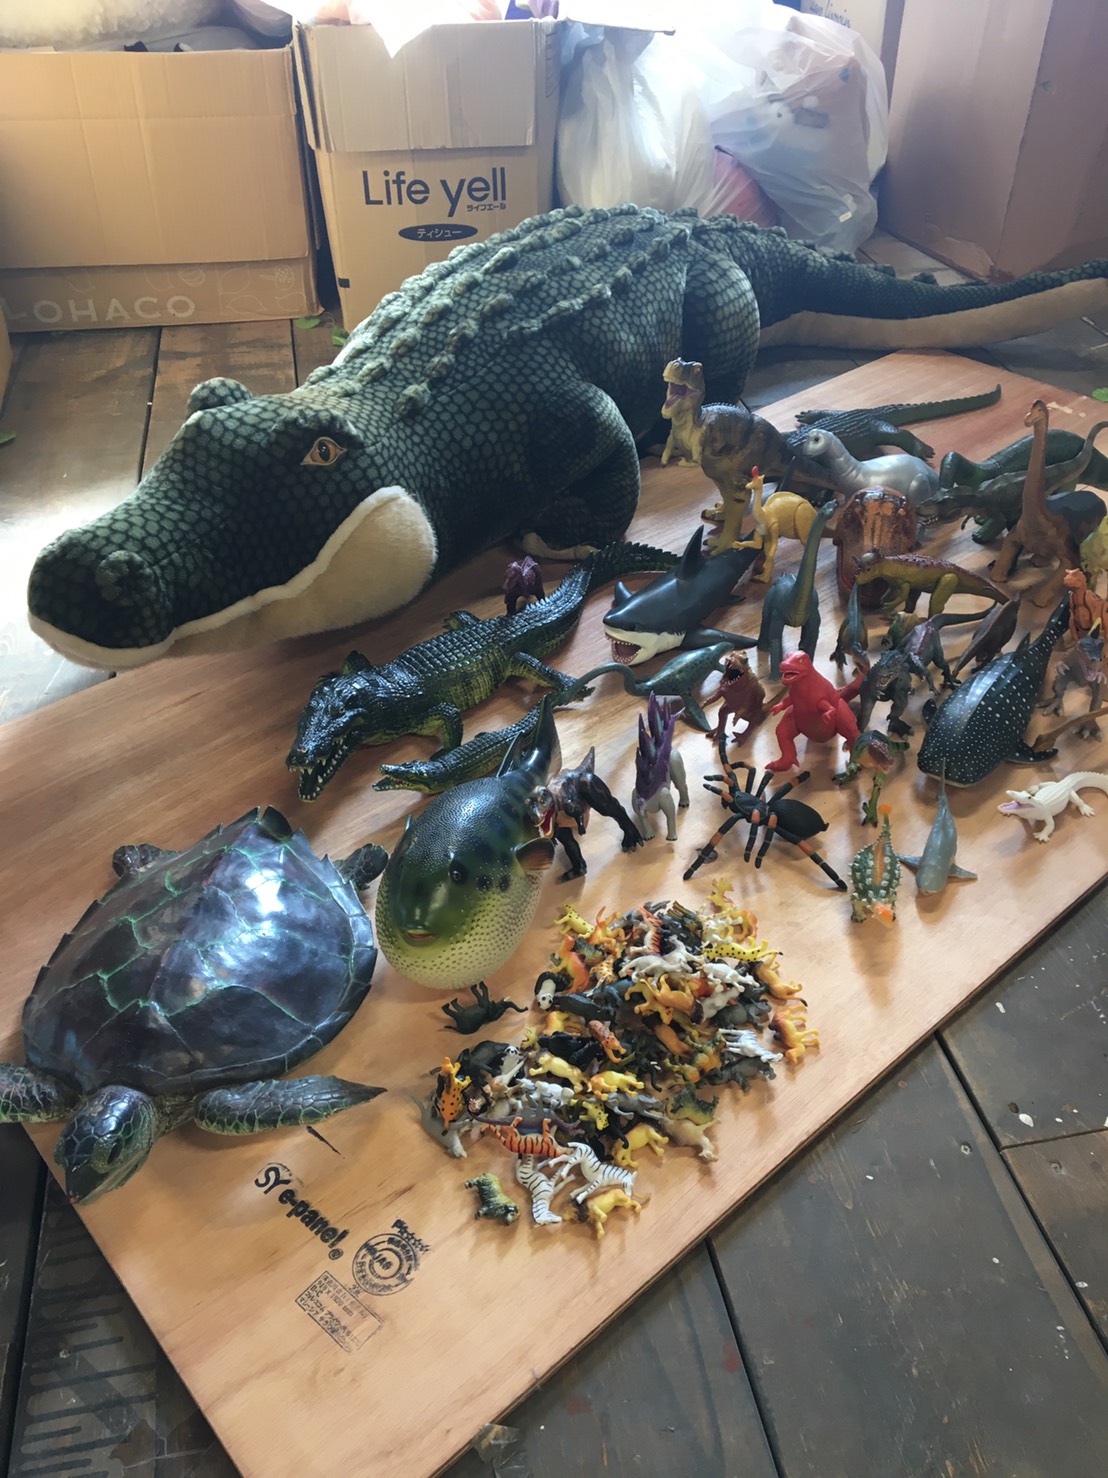 おもちゃ 1 6 買取商品のご紹介です 動物 恐竜フィギュア をたくさんお持ちいただきました ありがとうございます 万代書店 高崎店